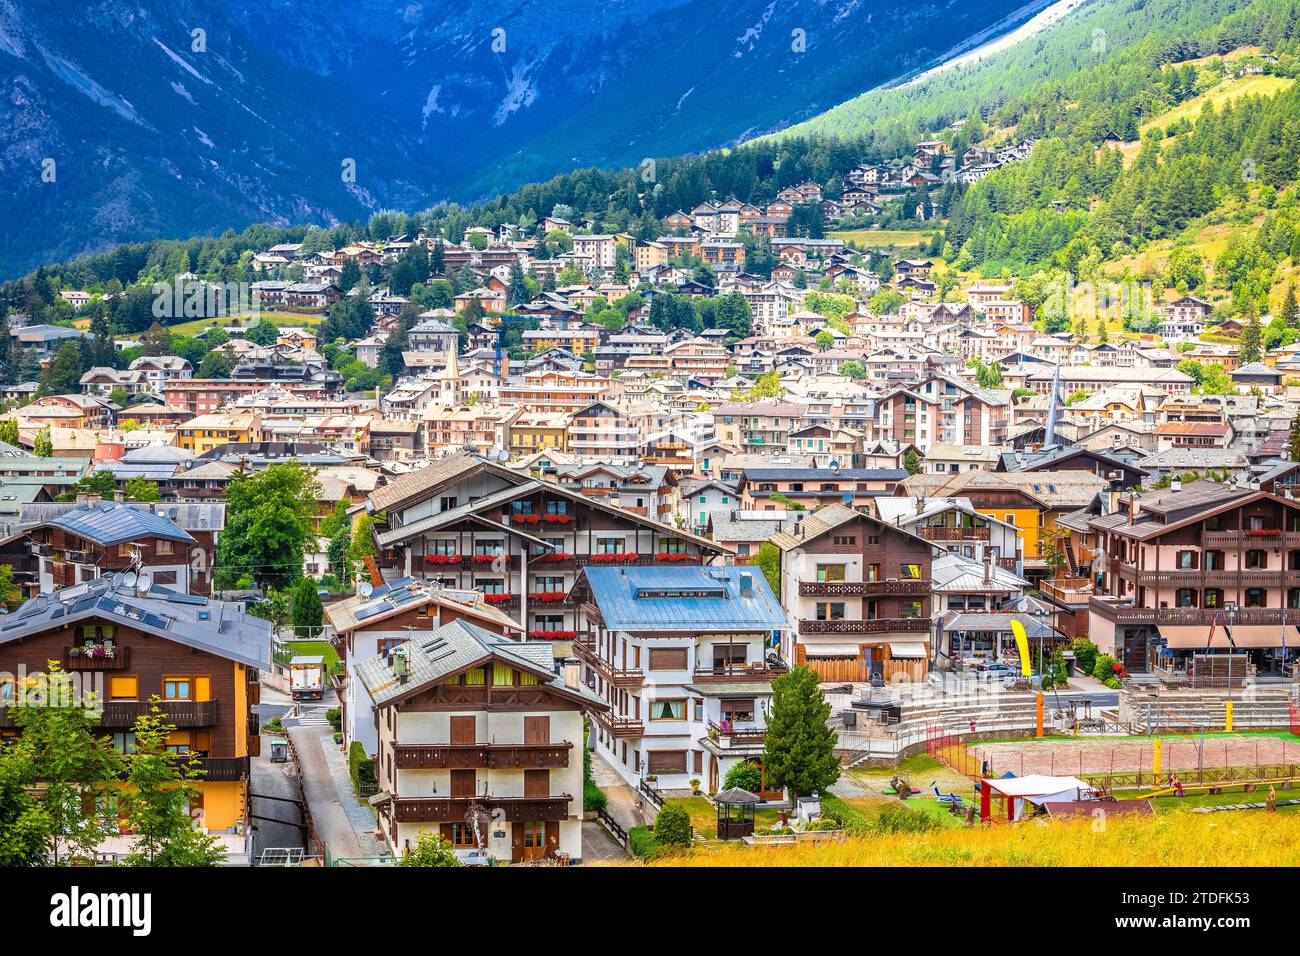 Ville de Bormio dans les Dolomites Alpes vue panoramique, province de Sondrio, Lombardie région de l'Italie Banque D'Images